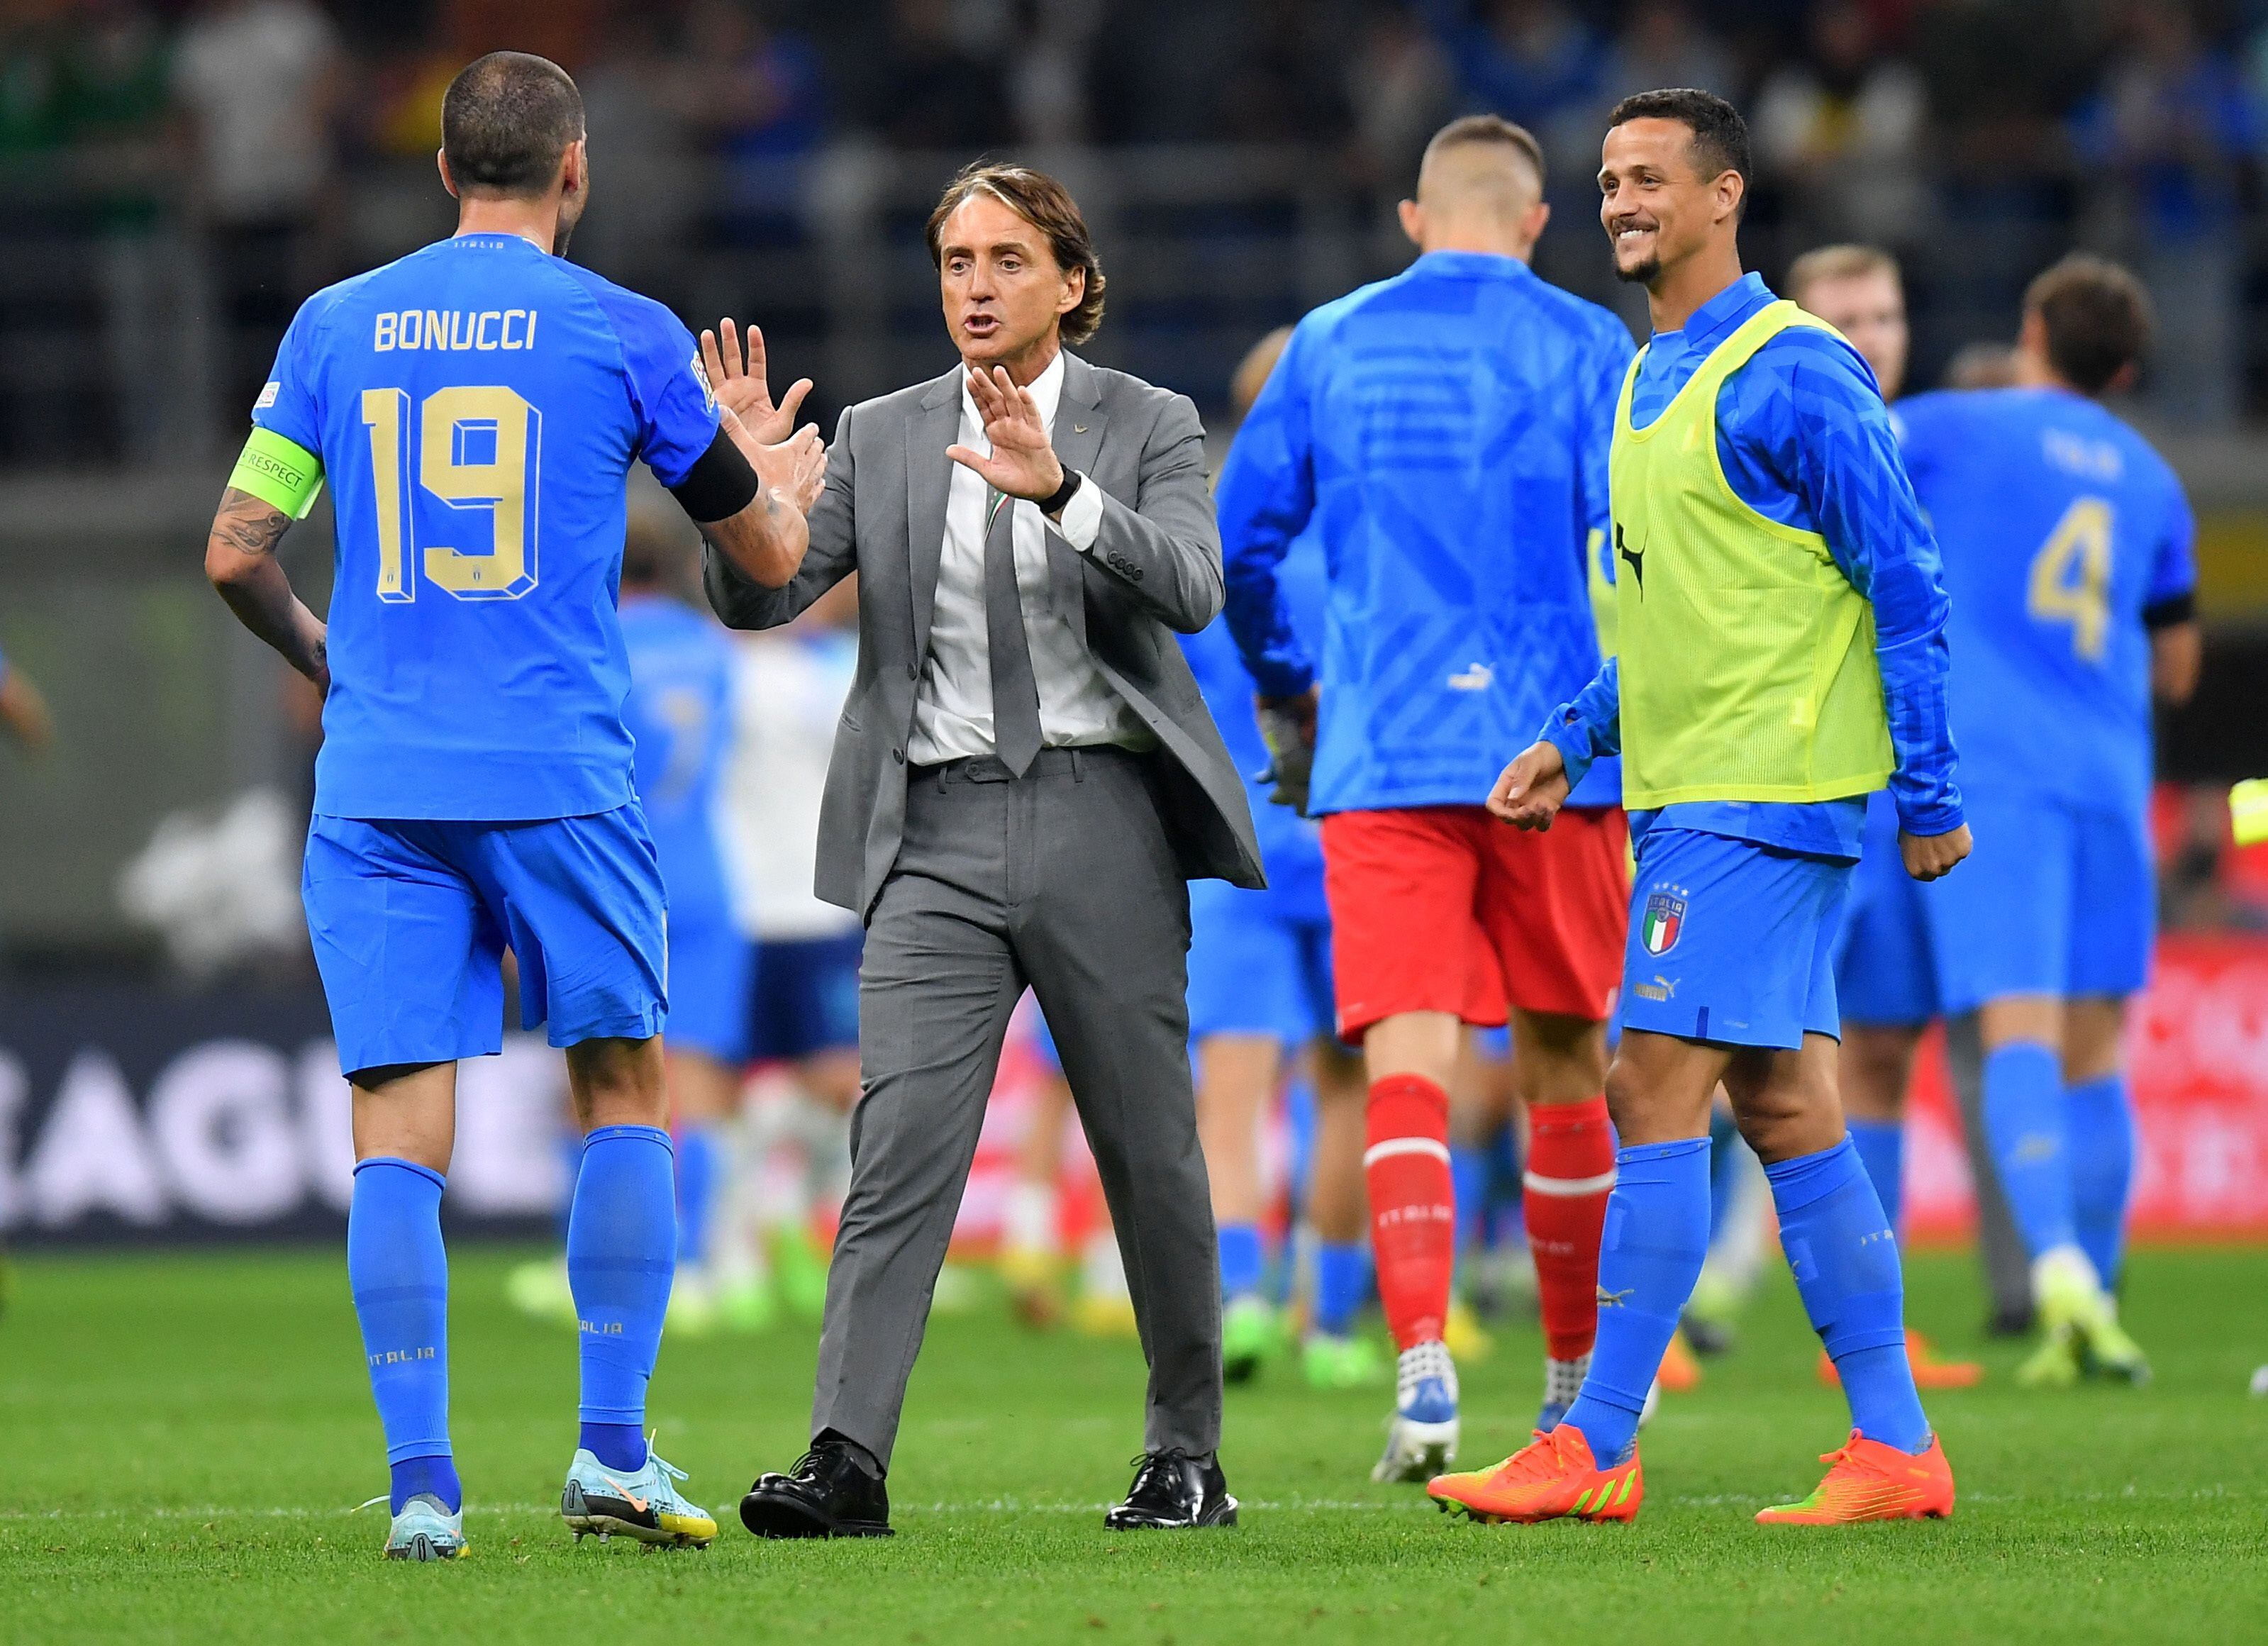 Roberto Mancini busca rearmar la selección de Italia de cara al nuevo ciclo mundialista (REUTERS/Daniele Mascolo)